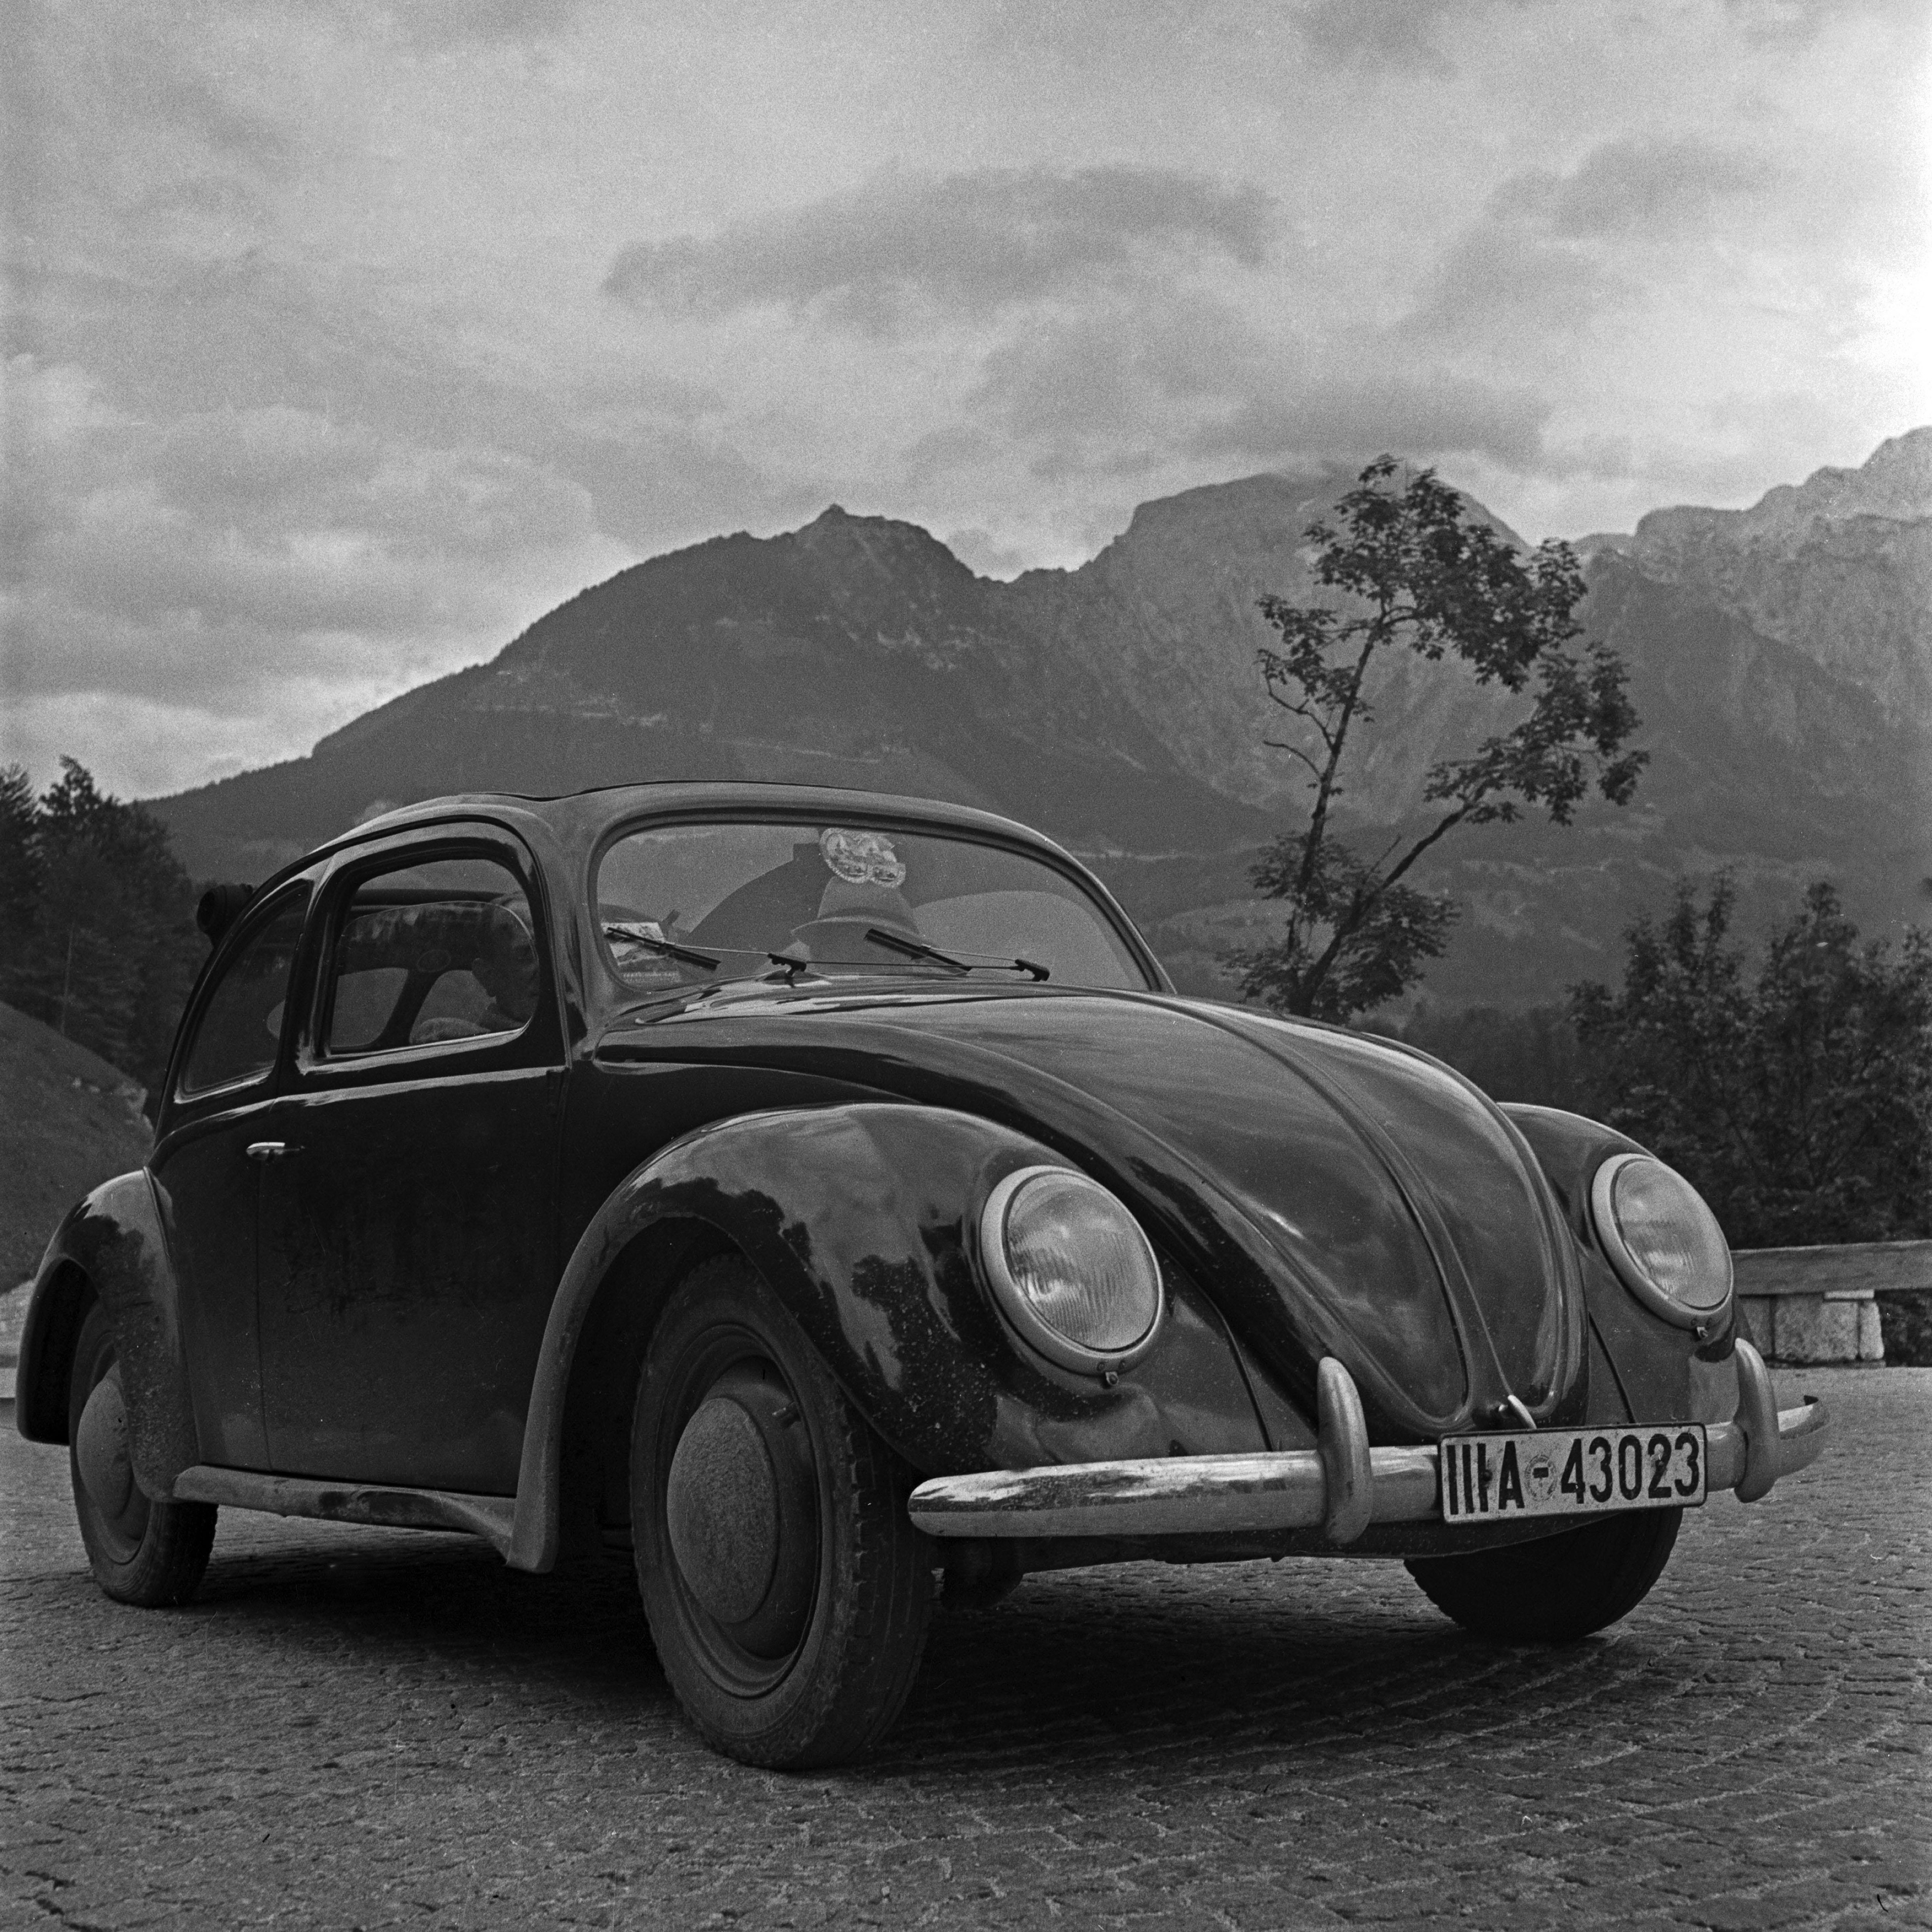 Black and White Photograph Karl Heinrich Lämmel - Parking Volkswagen en forme de scarabée près de montagnes, Allemagne, 1939 Imprimé plus tard 